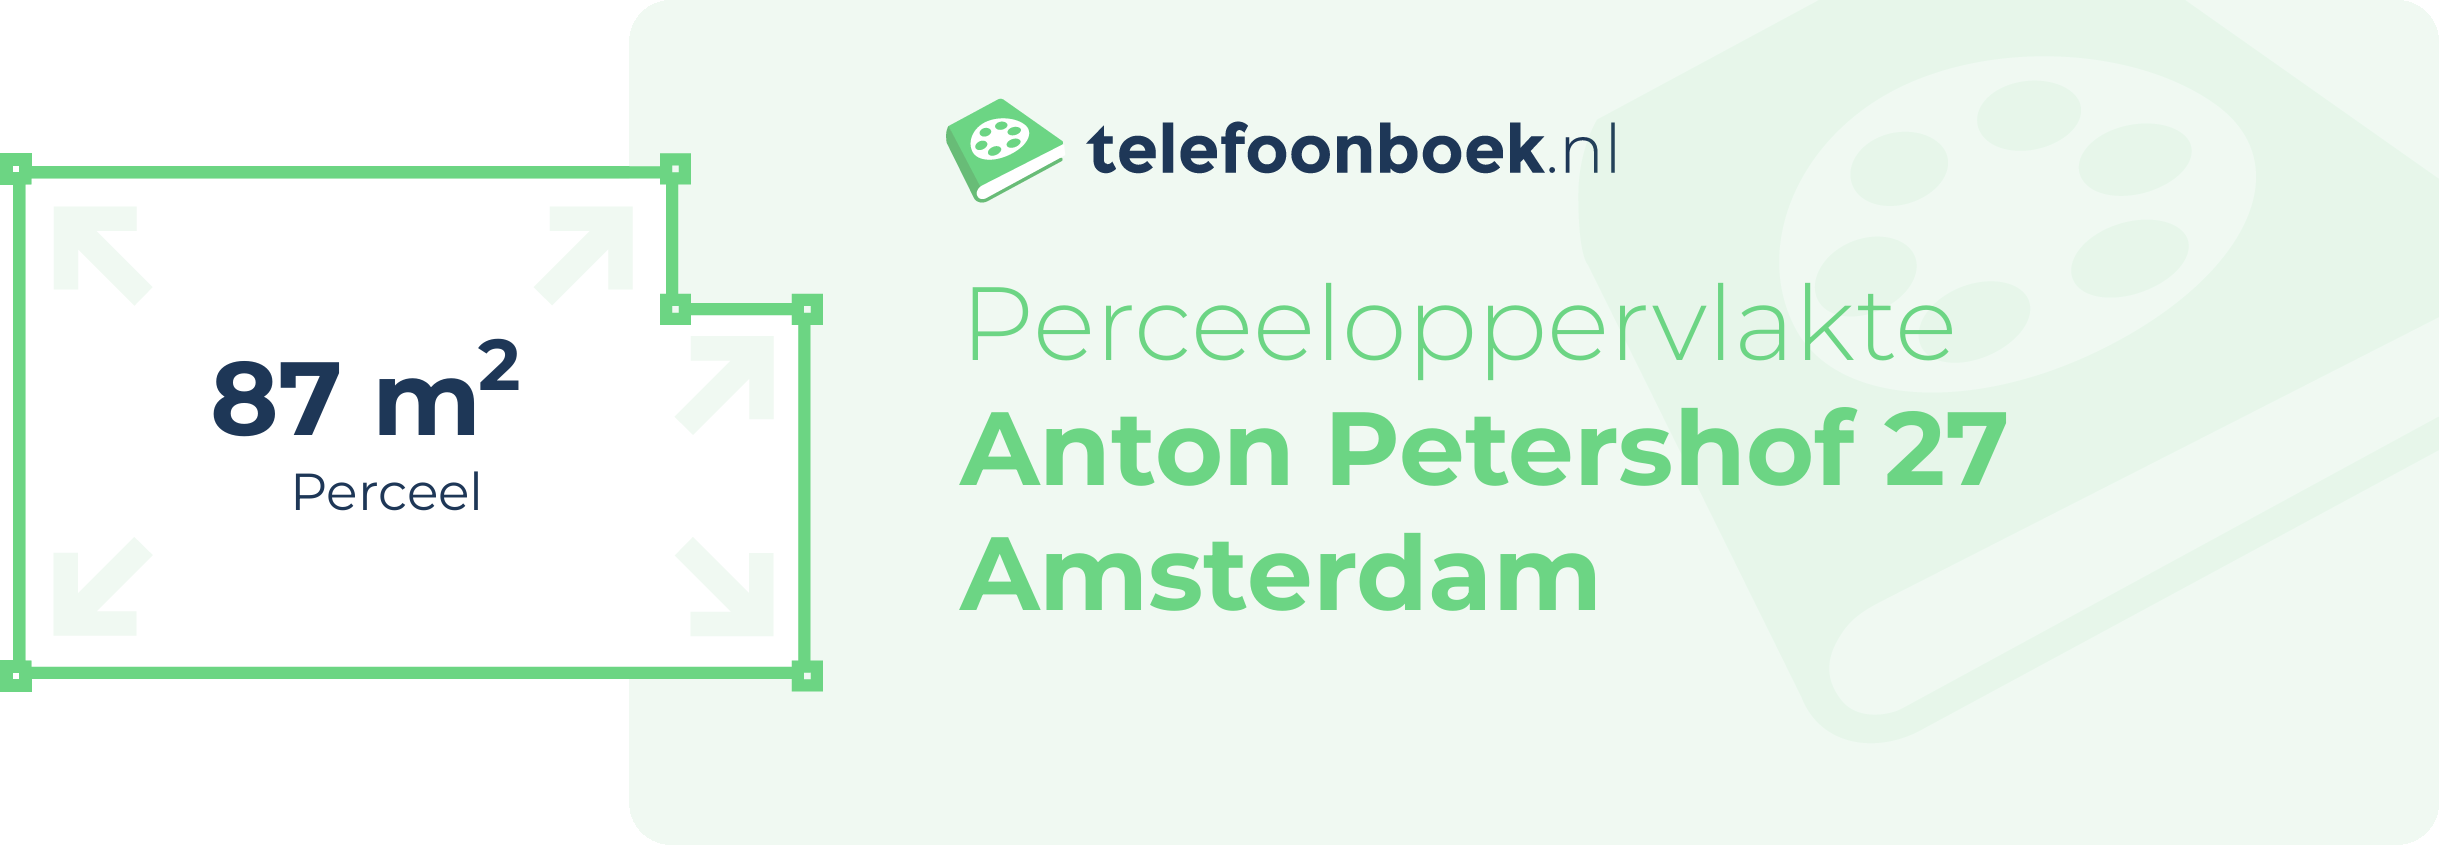 Perceeloppervlakte Anton Petershof 27 Amsterdam